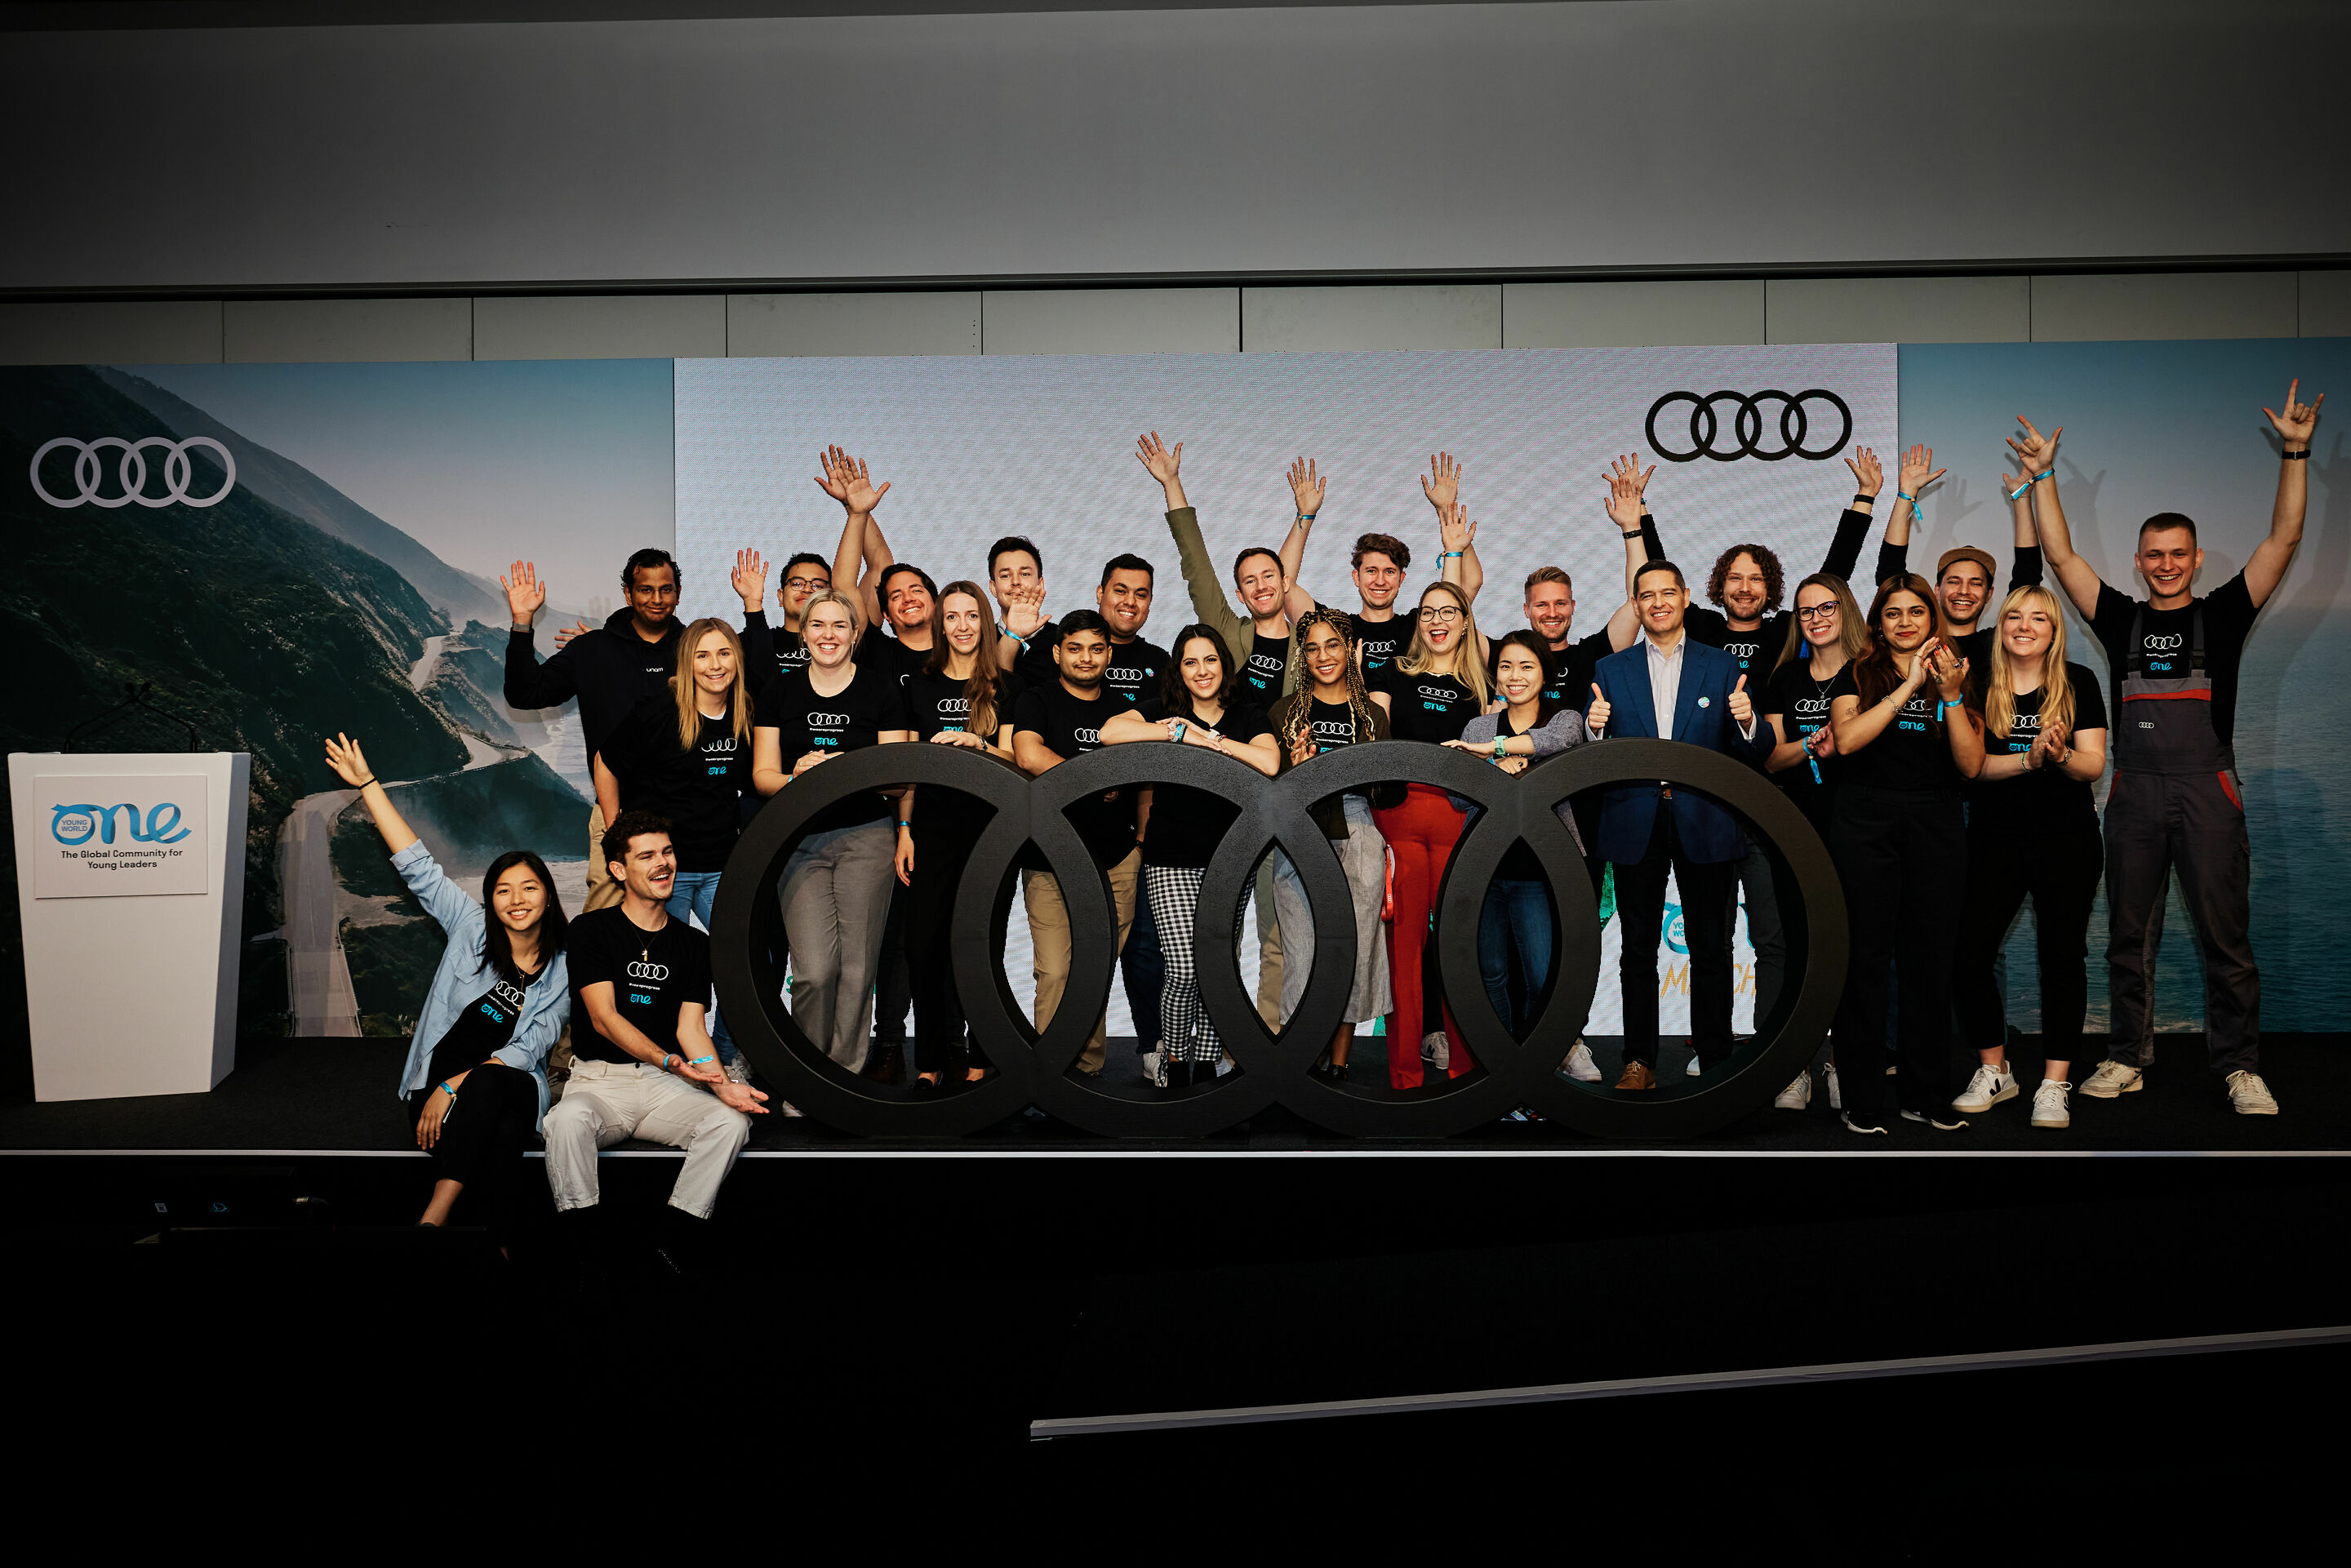 Zukunftsvisionen in Manchester: Audi bringt junge Talente zum One Young World Summit